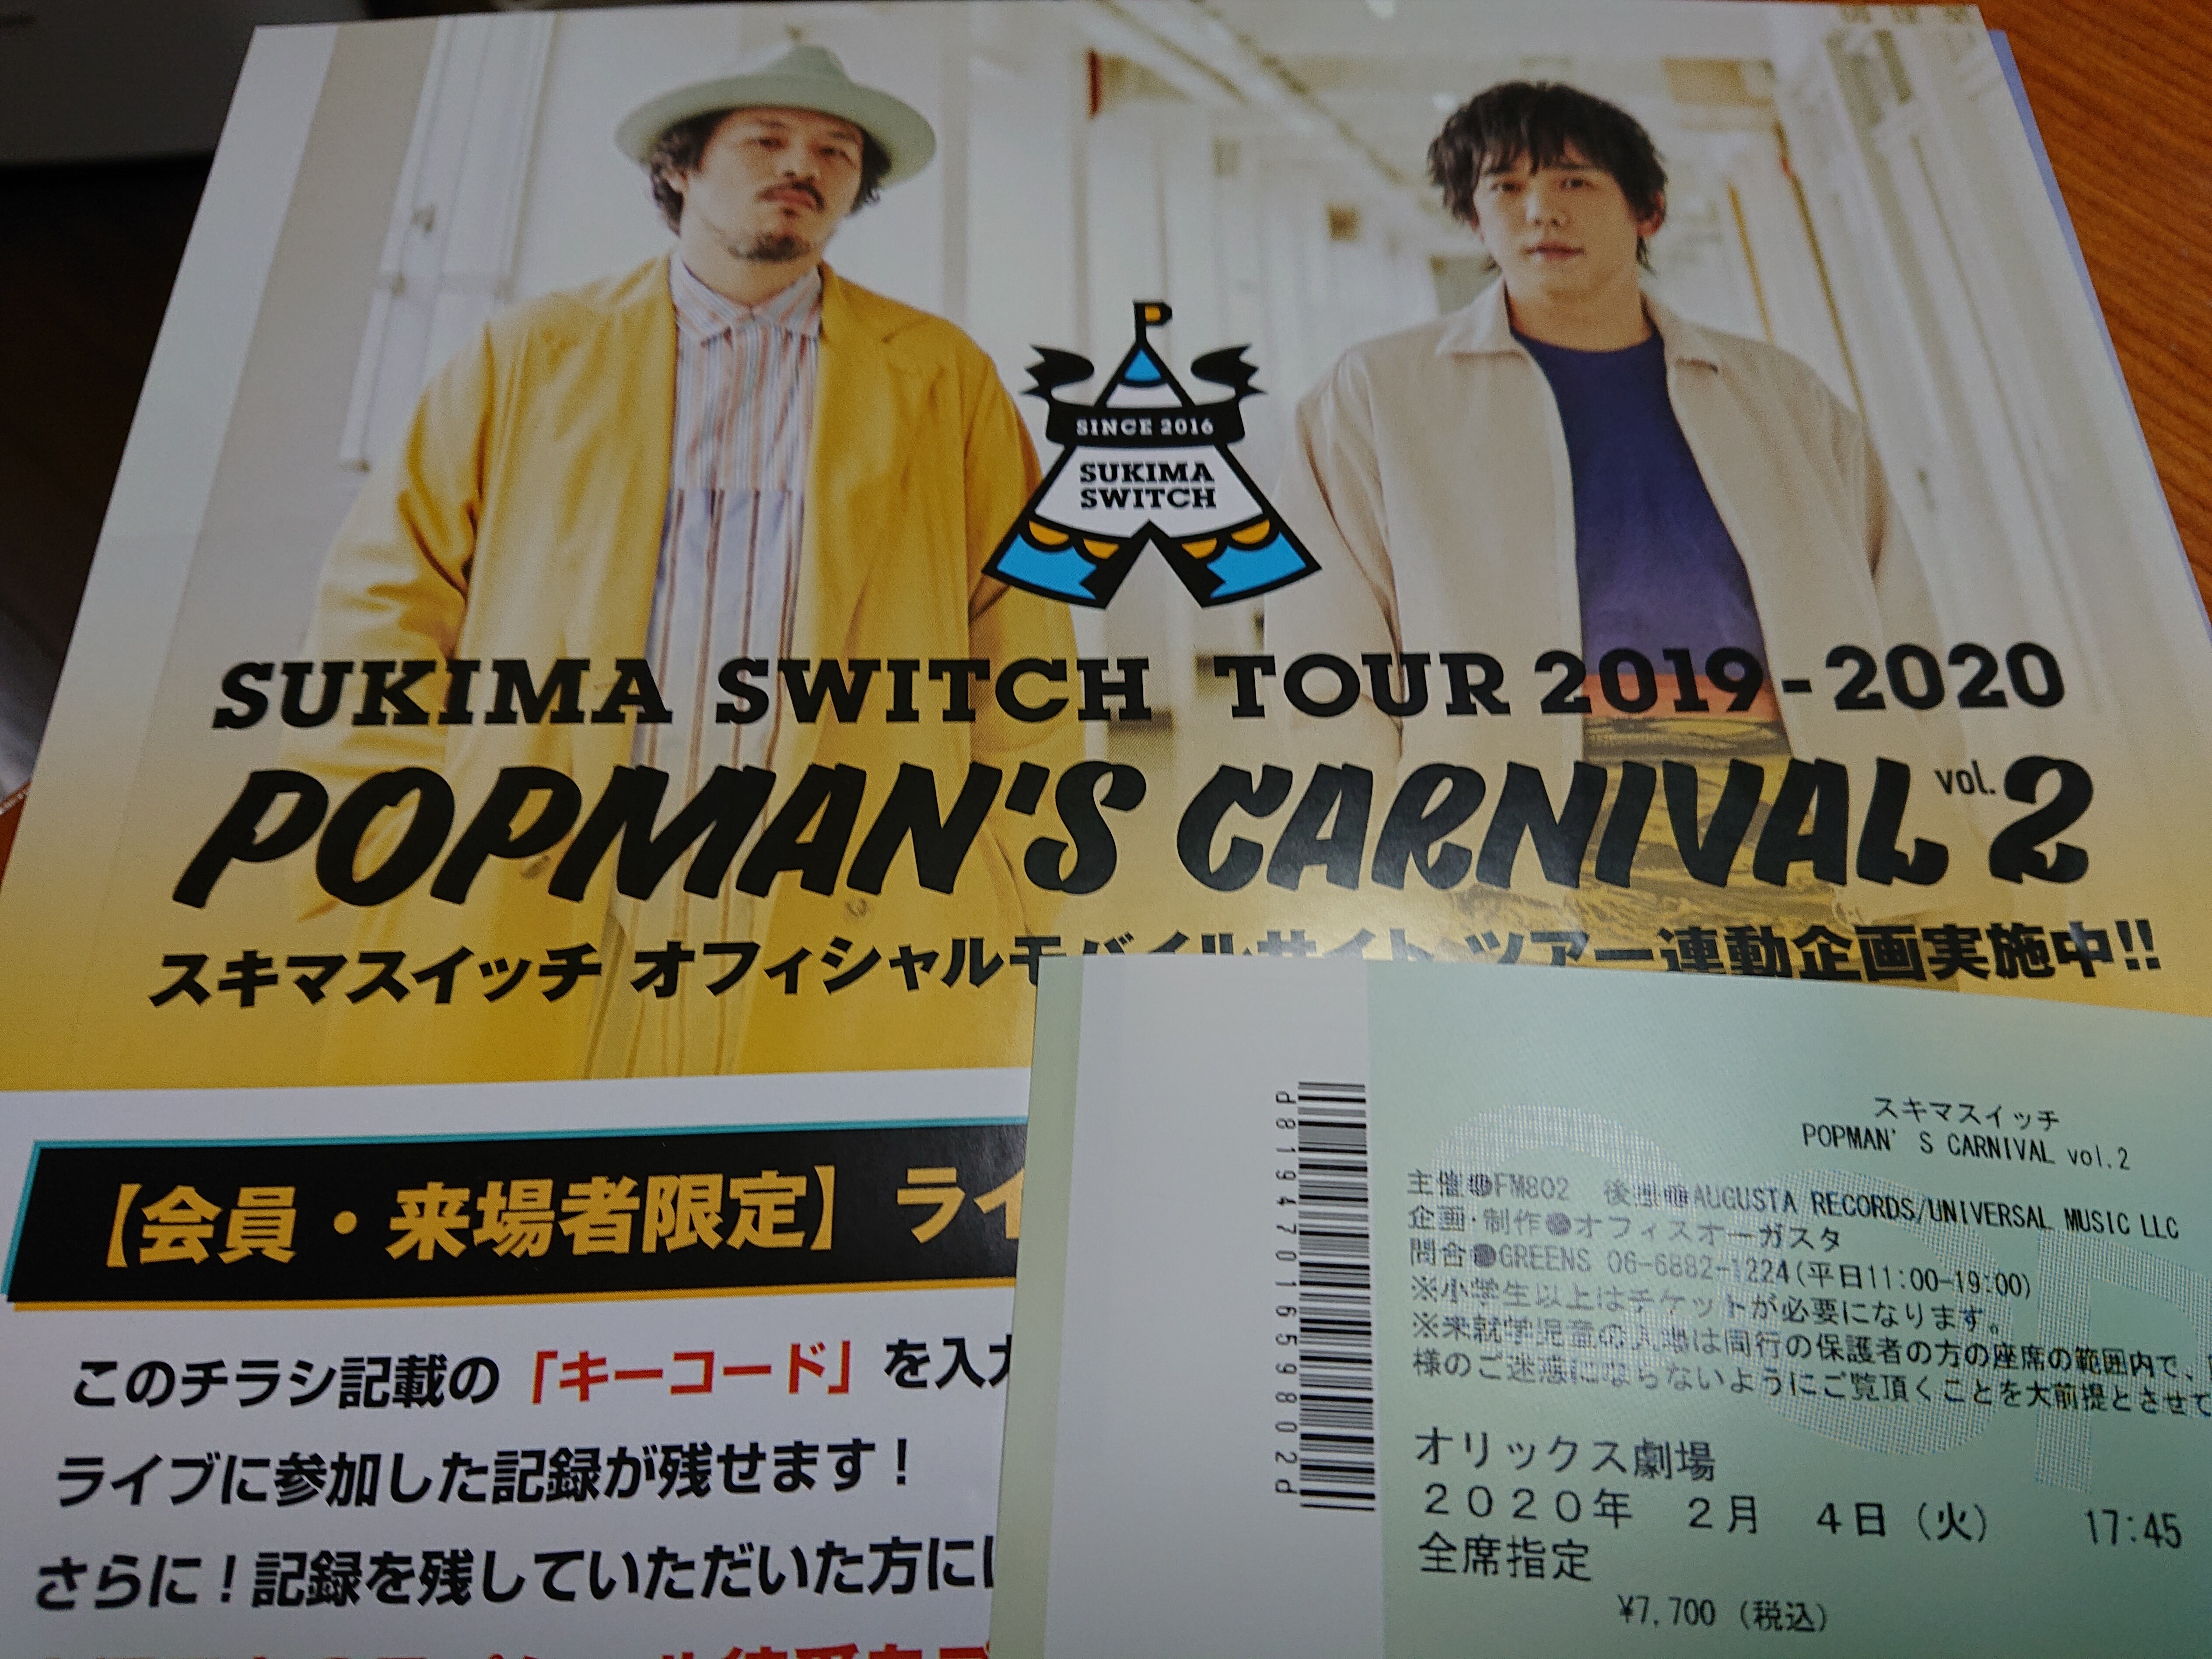 スキマスイッチtour 19 Popman S Carnival Vol 2 オリックス劇場 冥王星へ連れてって